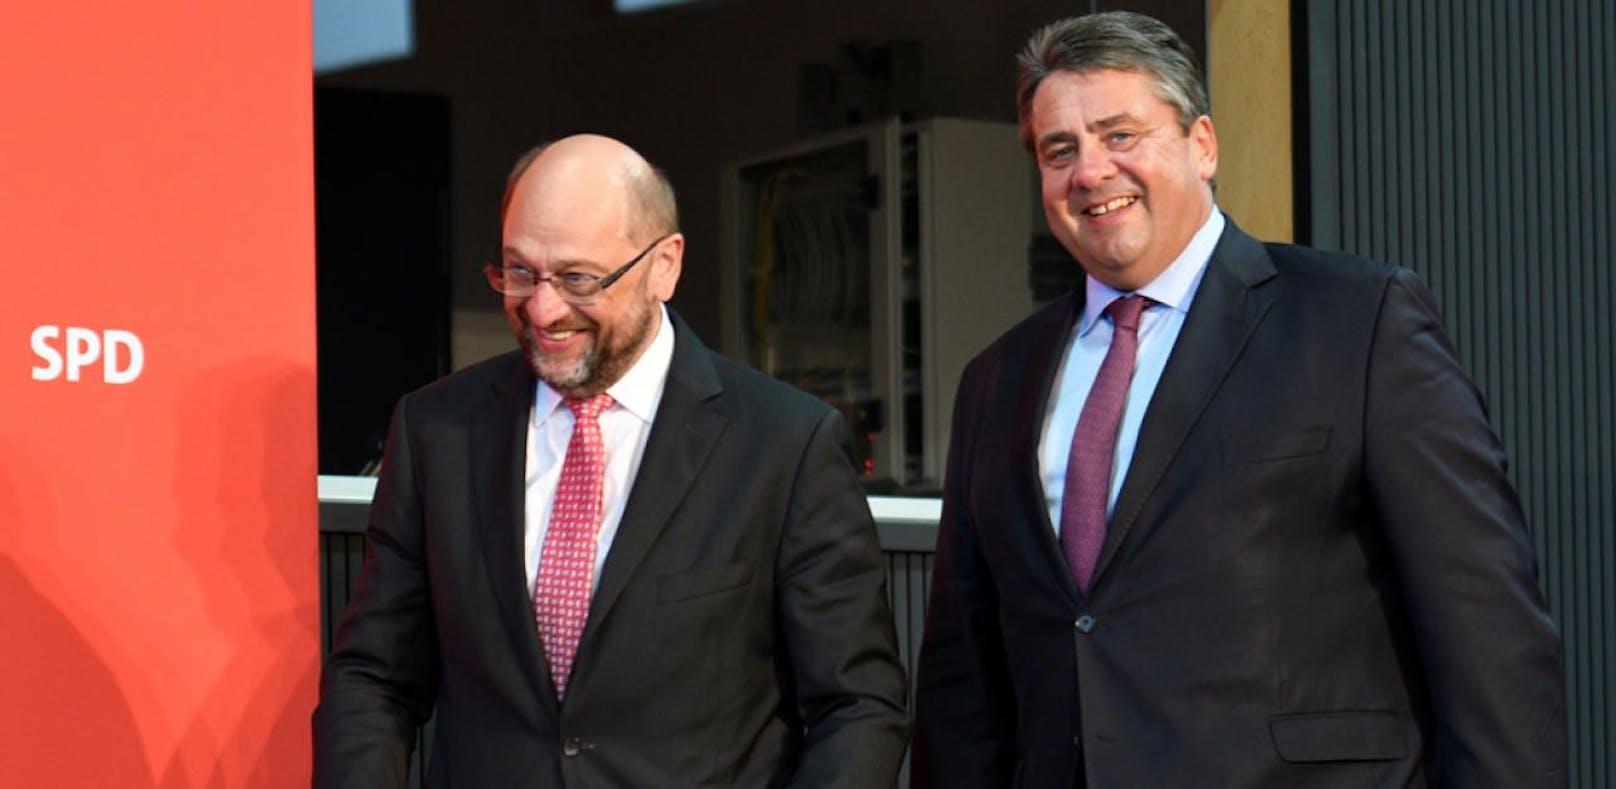 Darum verzichtet Schulz auf Außenminister-Job